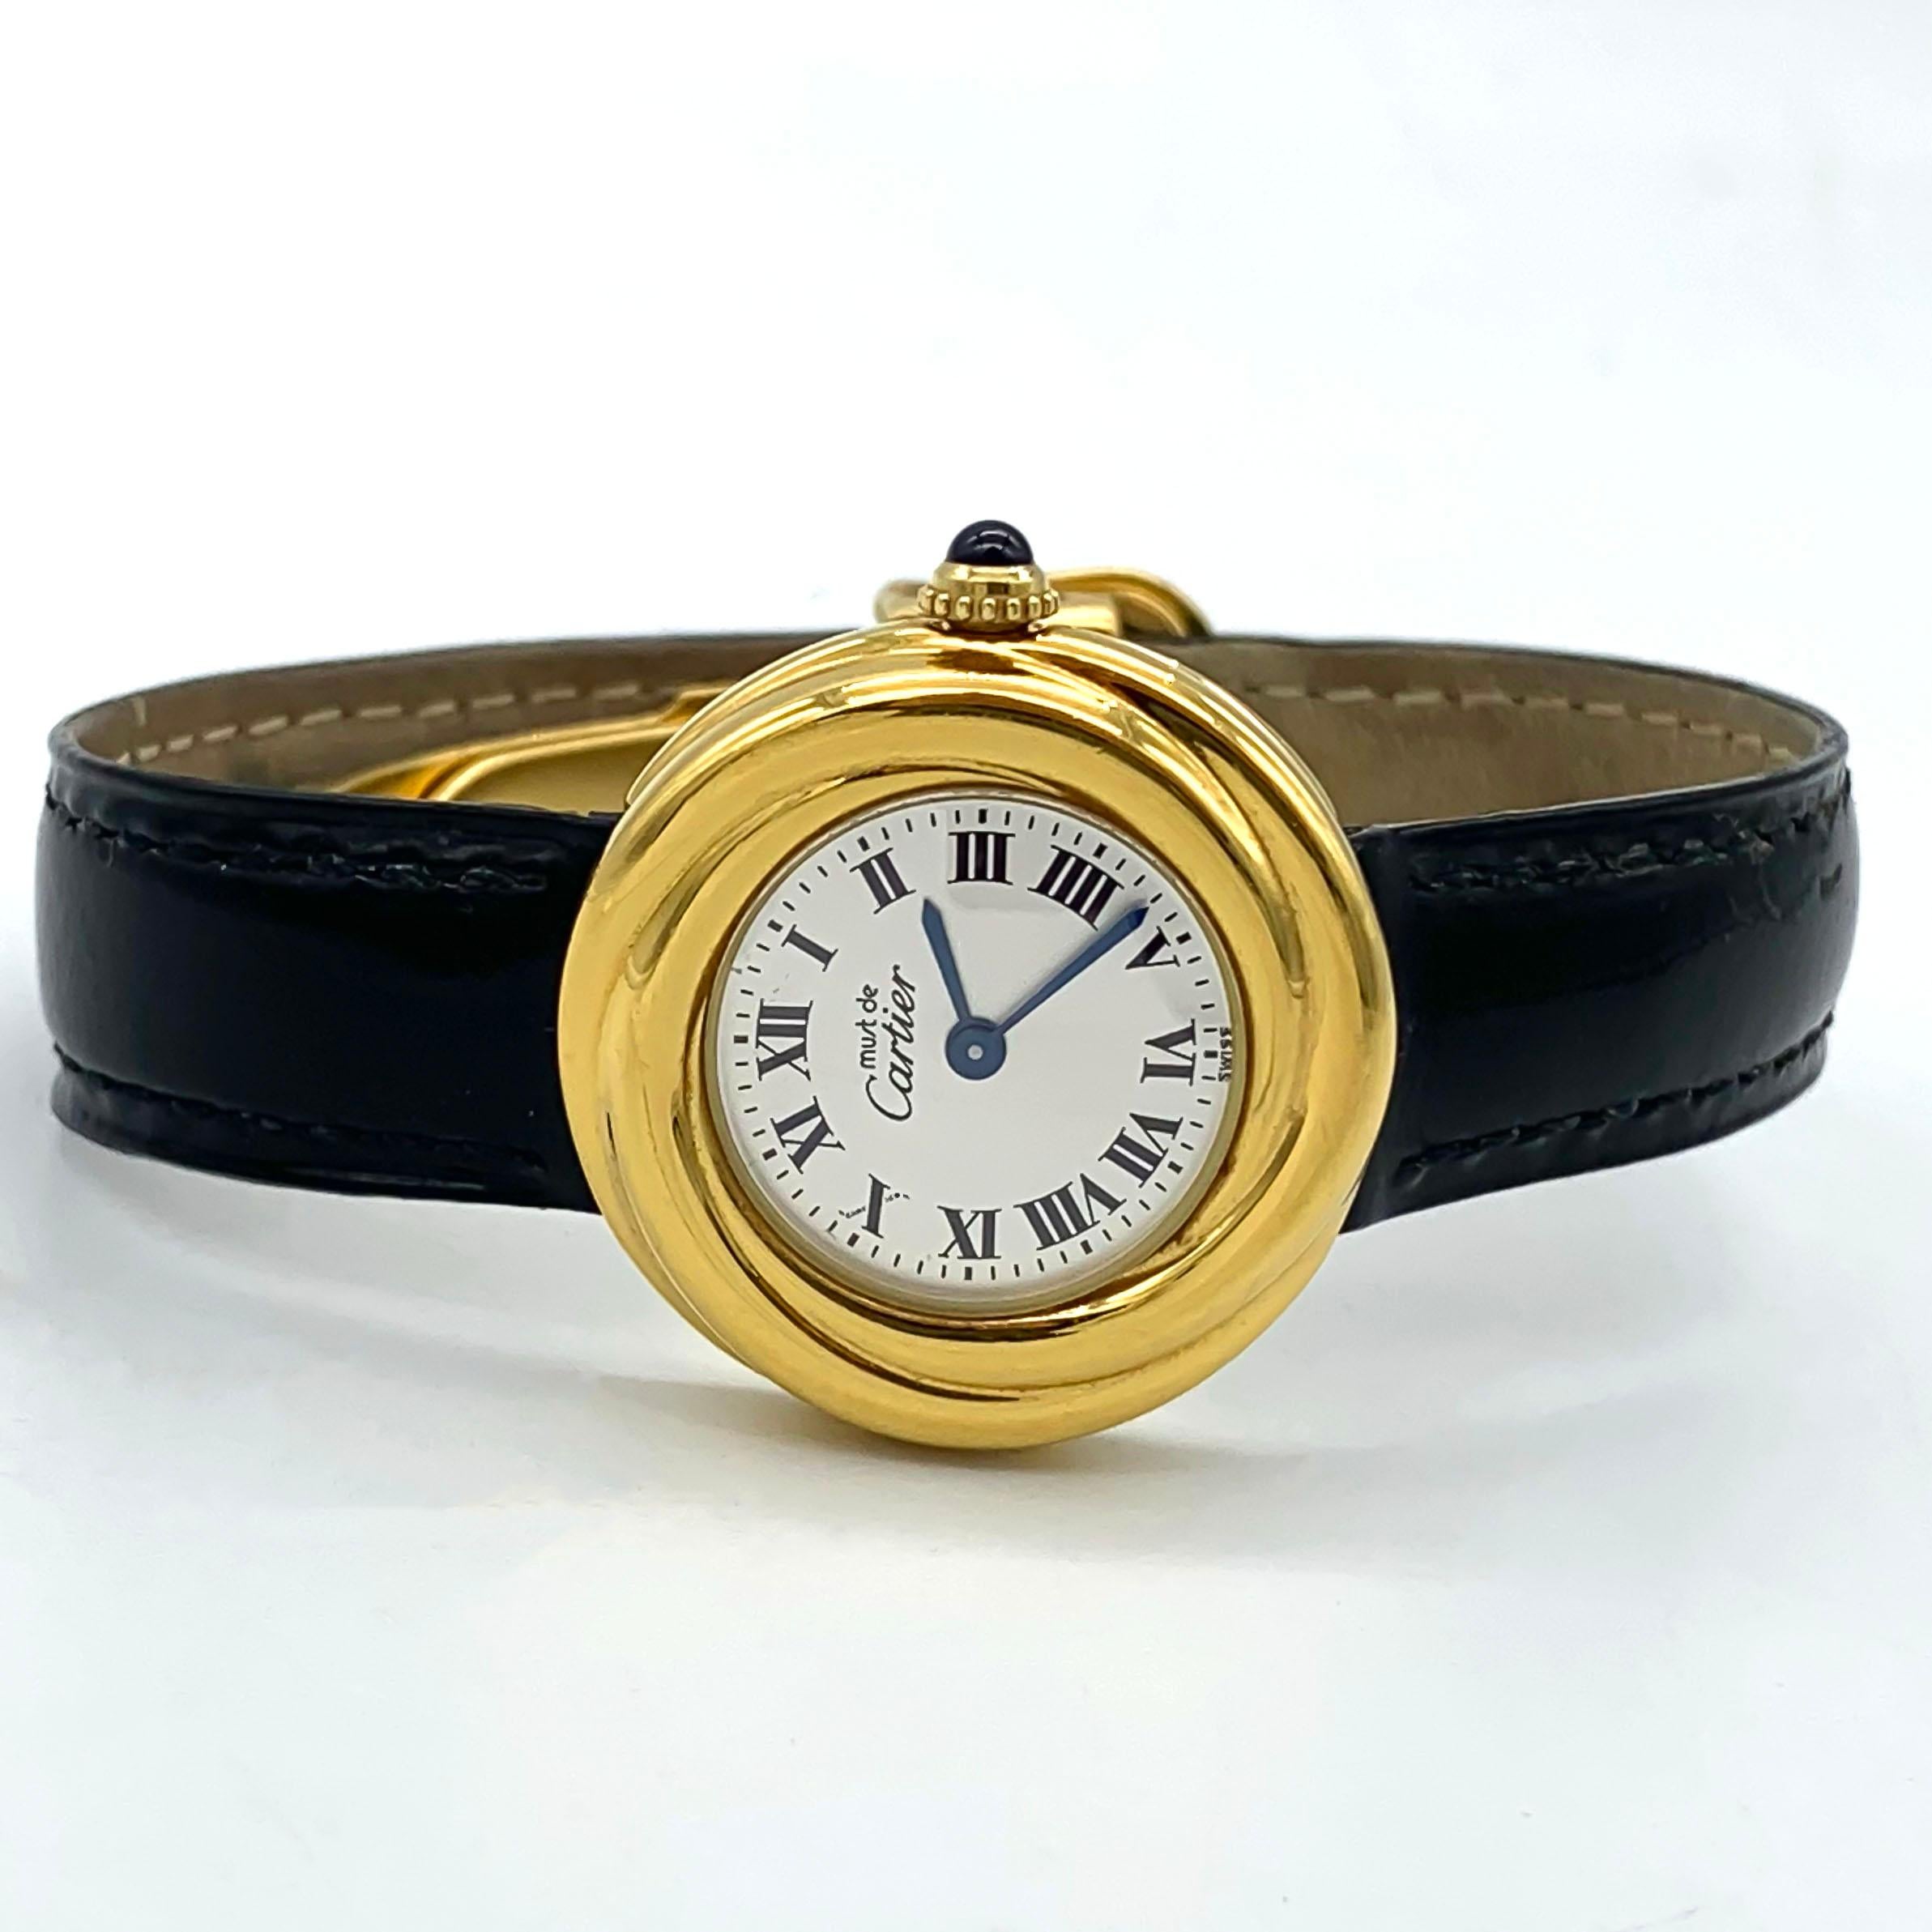 La Trinité de Cartier Vermeil Must De Cartier Argent 925  Réf. W1010644 2735 est une superbe montre-bracelet pour femme qui allie élégance intemporelle et fonctionnalité moderne. Fabriquée par la célèbre marque de luxe Cartier, elle présente un